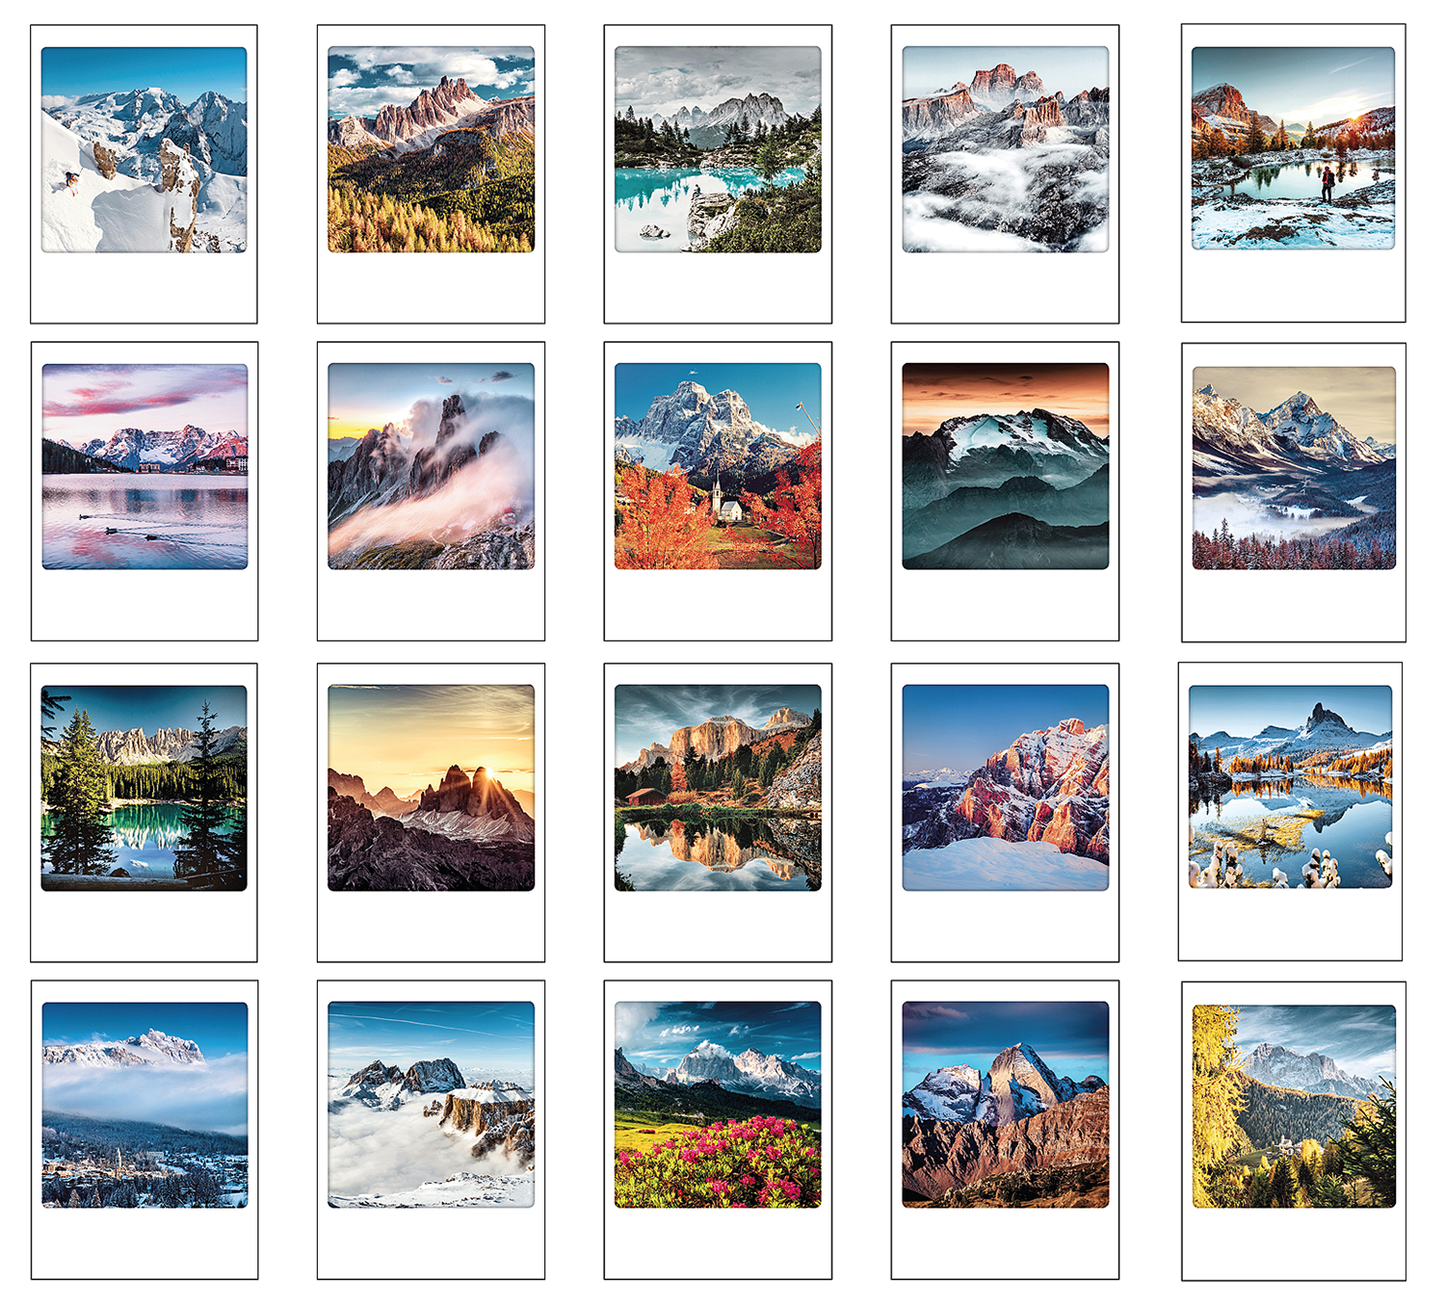 Polaroid Box: die Gipfel der Dolomiten